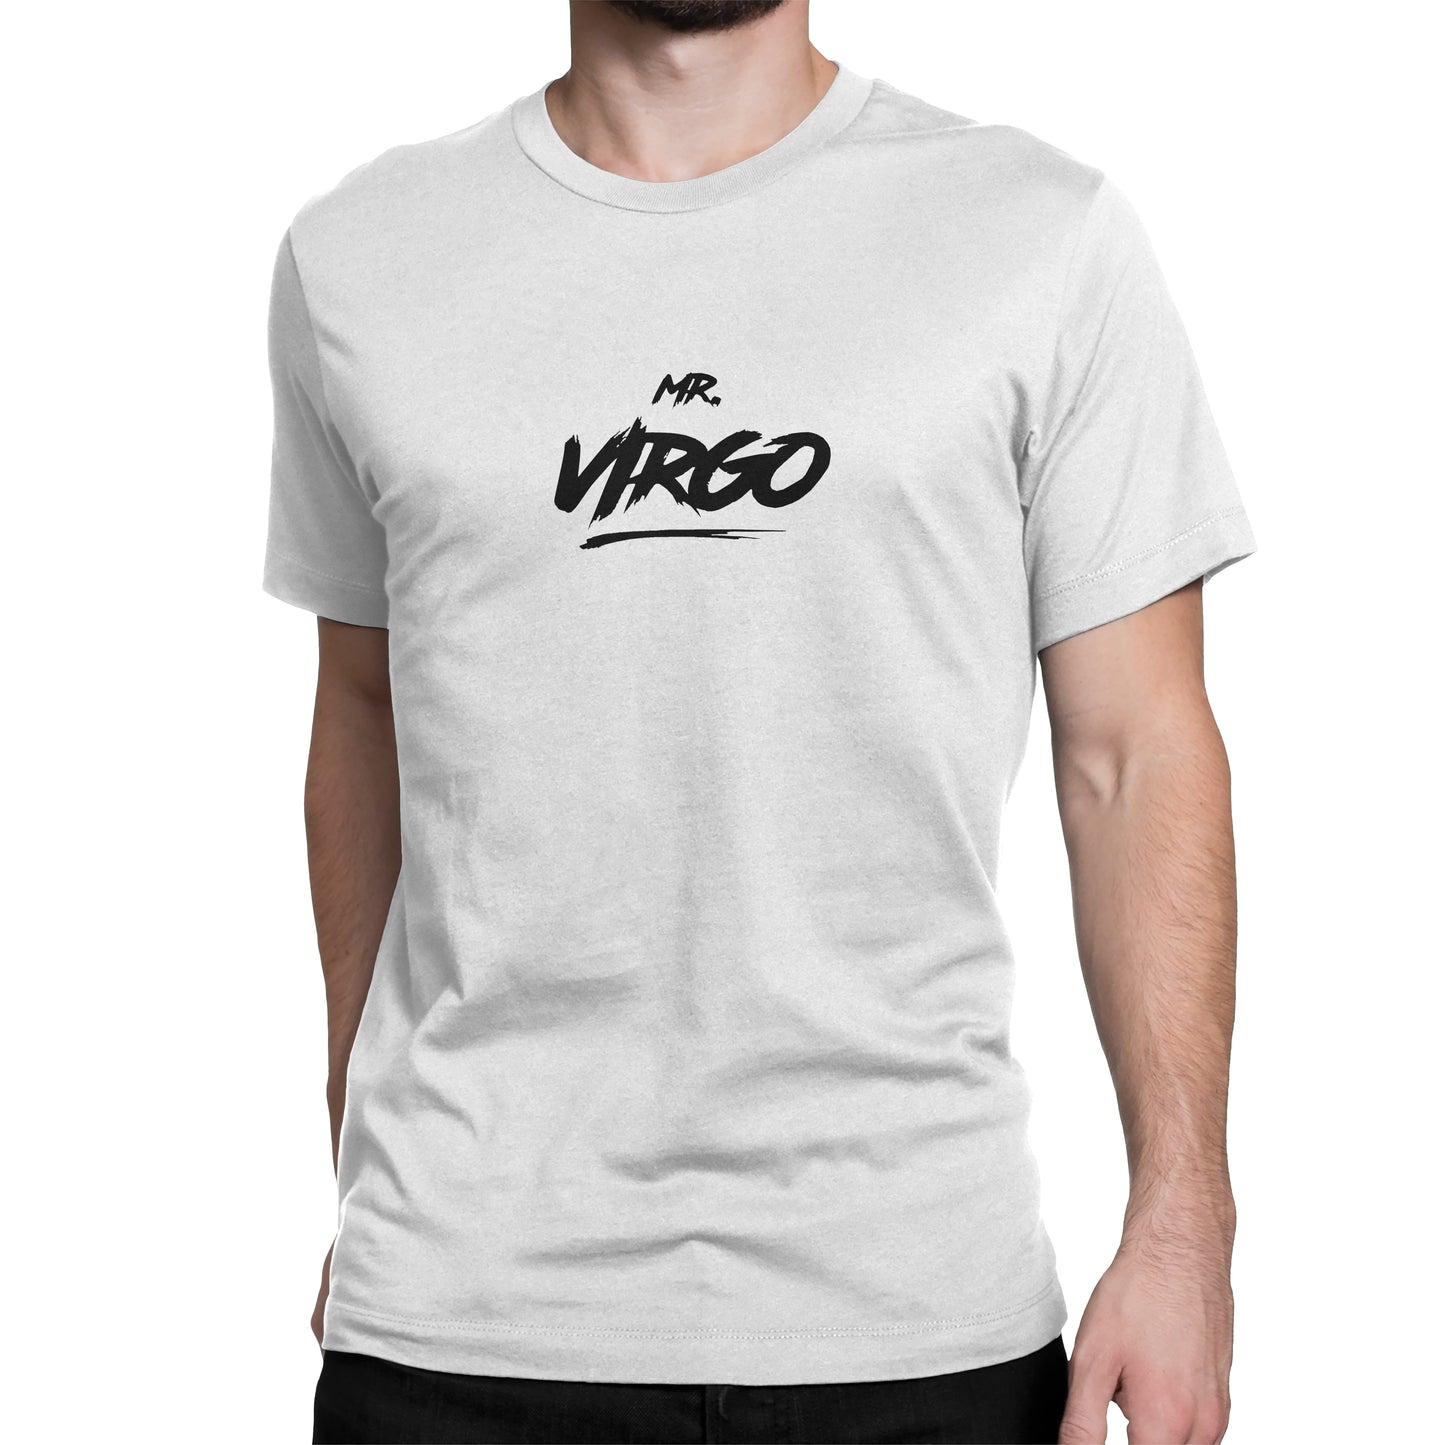 Mr Virgo T-Shirt White